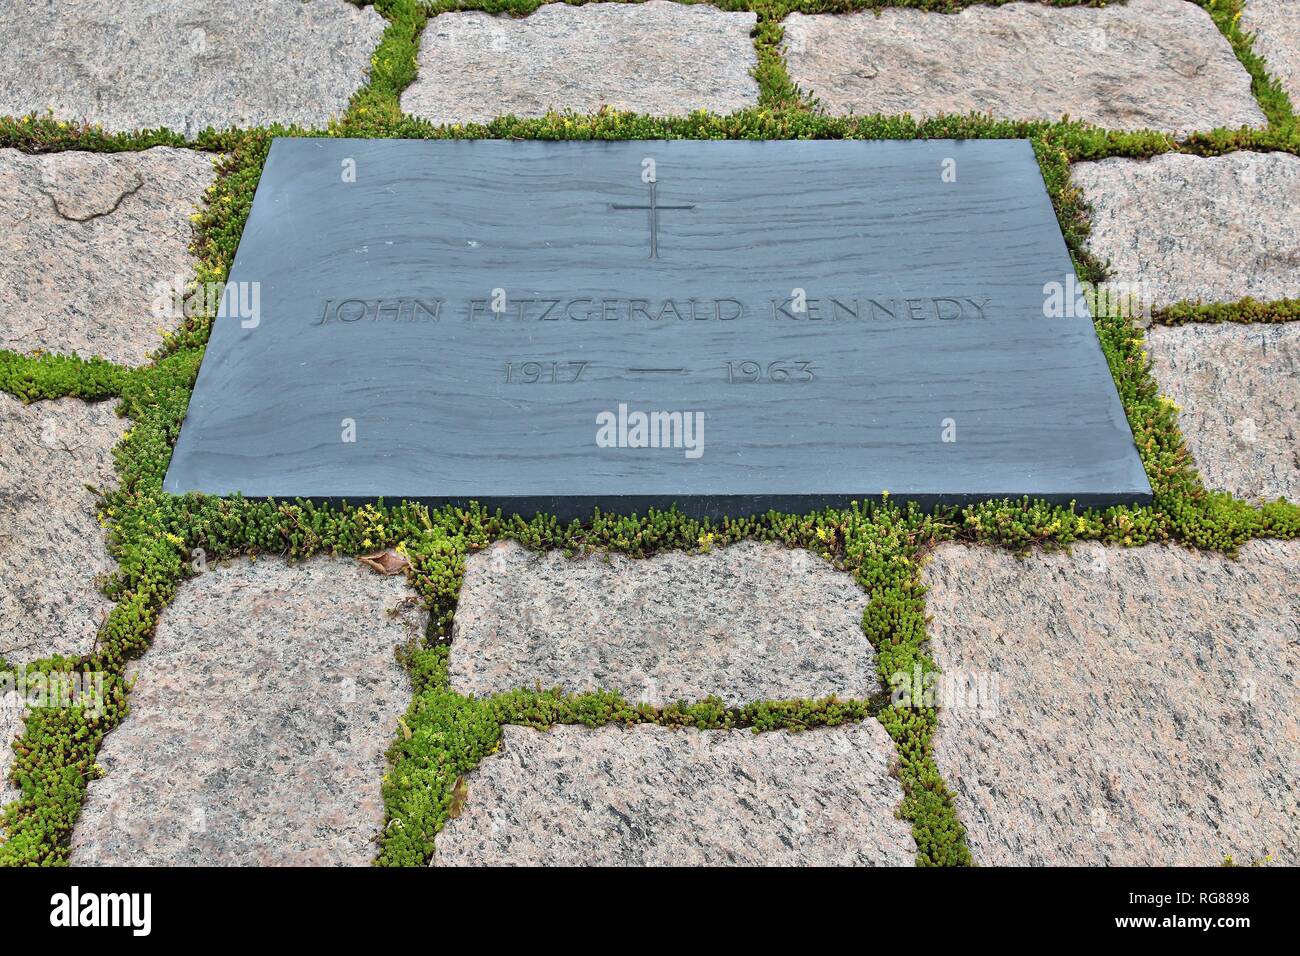 WASHINGTON, USA - Le 13 juin 2013 : John Fitzgerald Kennedy tombe du cimetière national d'Arlington, à Washington. JFK était le 35e président des États-Unis Banque D'Images